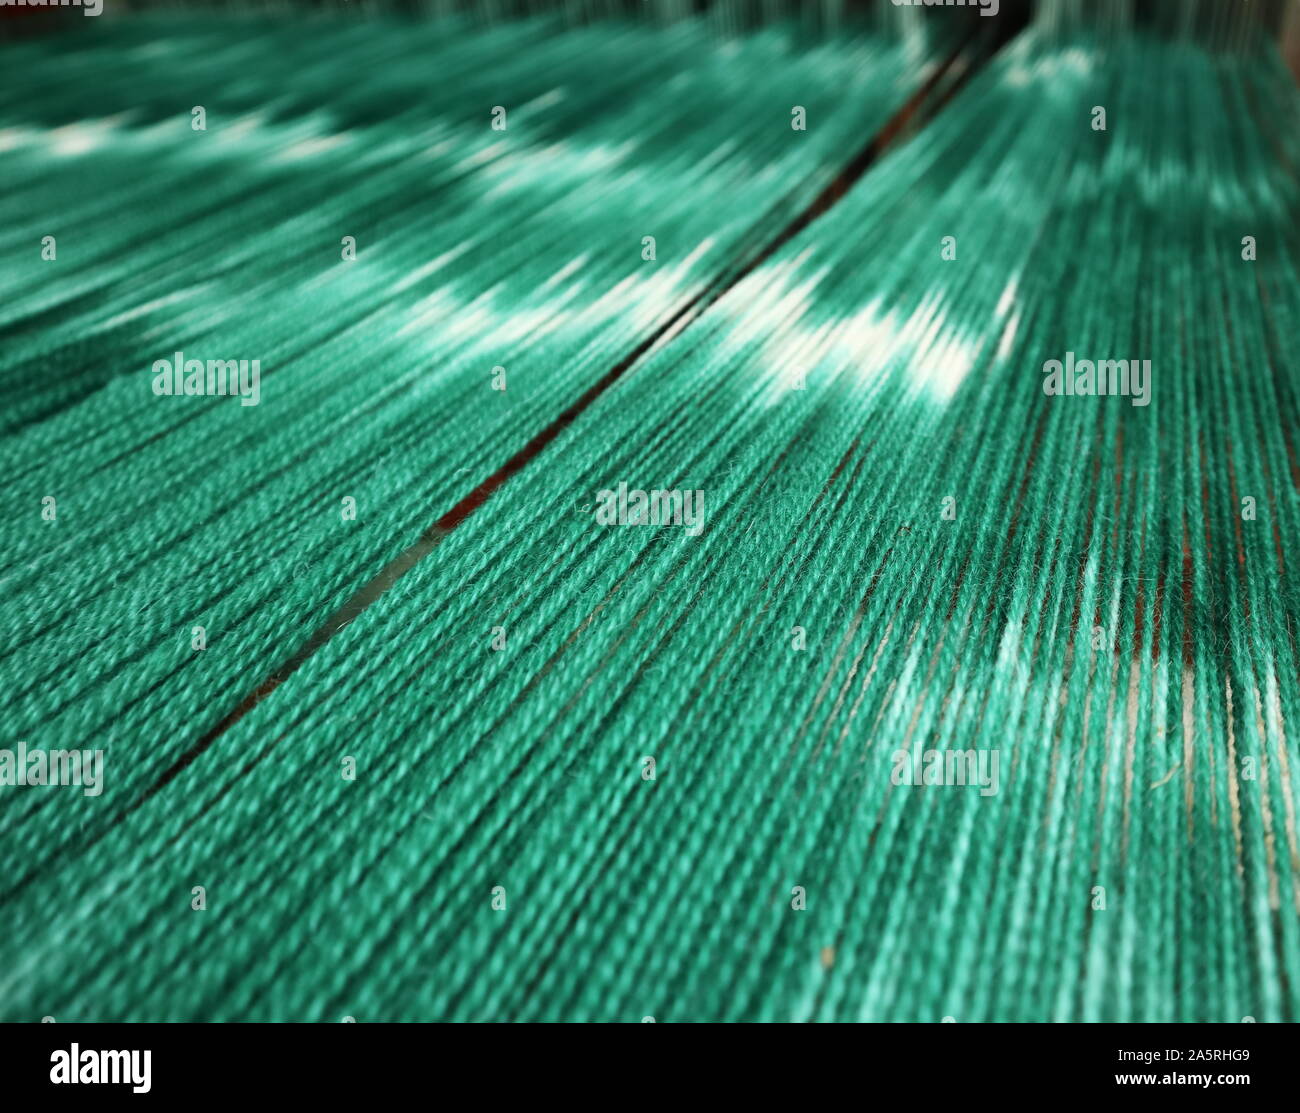 Von Hand bemalt, grüne und weiße Wolle Verwerfung auf dem Webstuhl Stockfoto